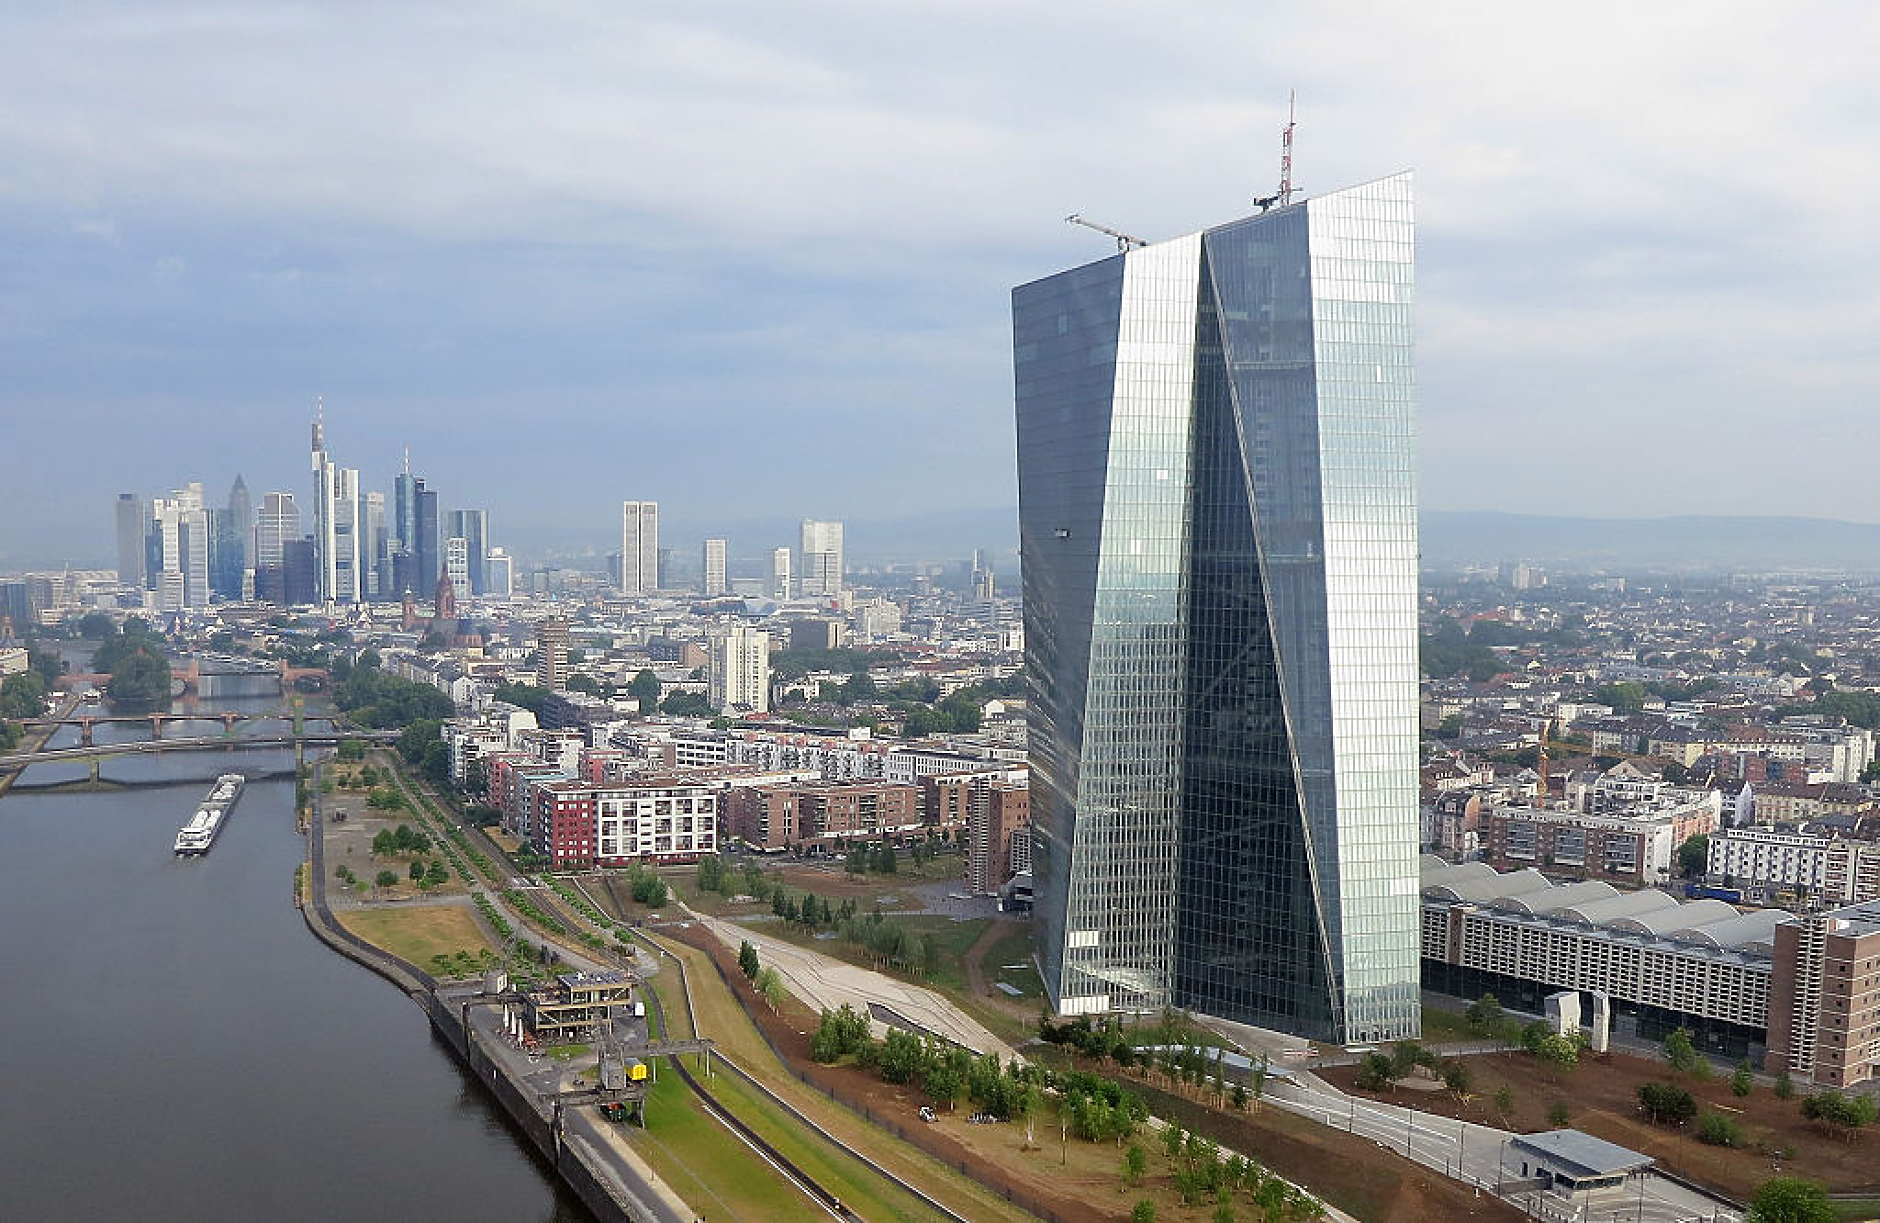 ЕЦБ повишава капиталовите изисквания за 20 банки